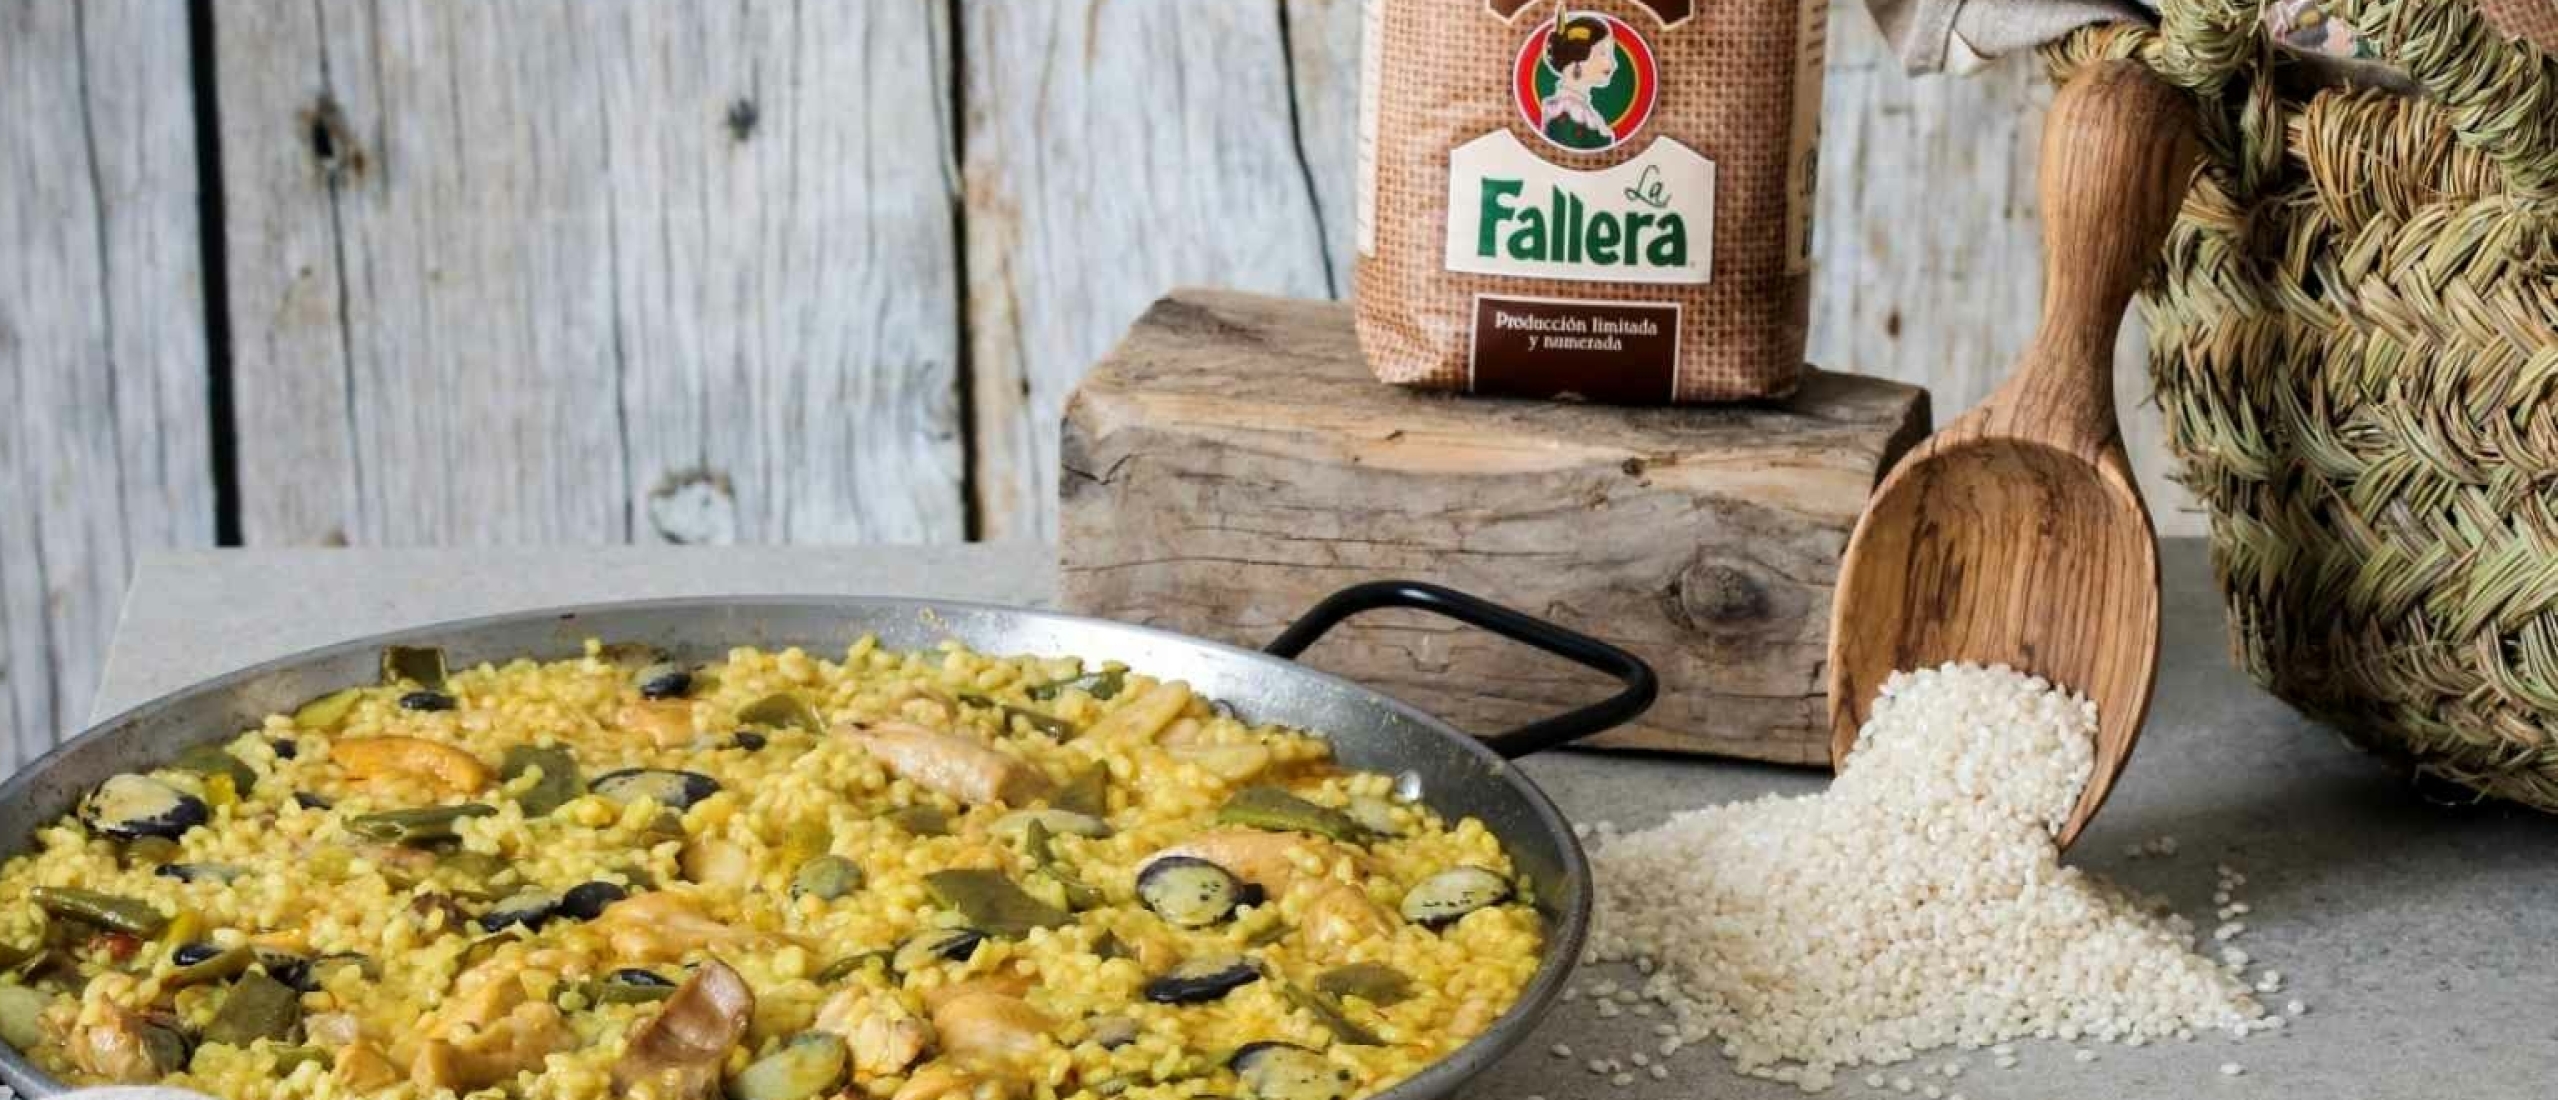 De traditionele ingrediënten van paella: een gids